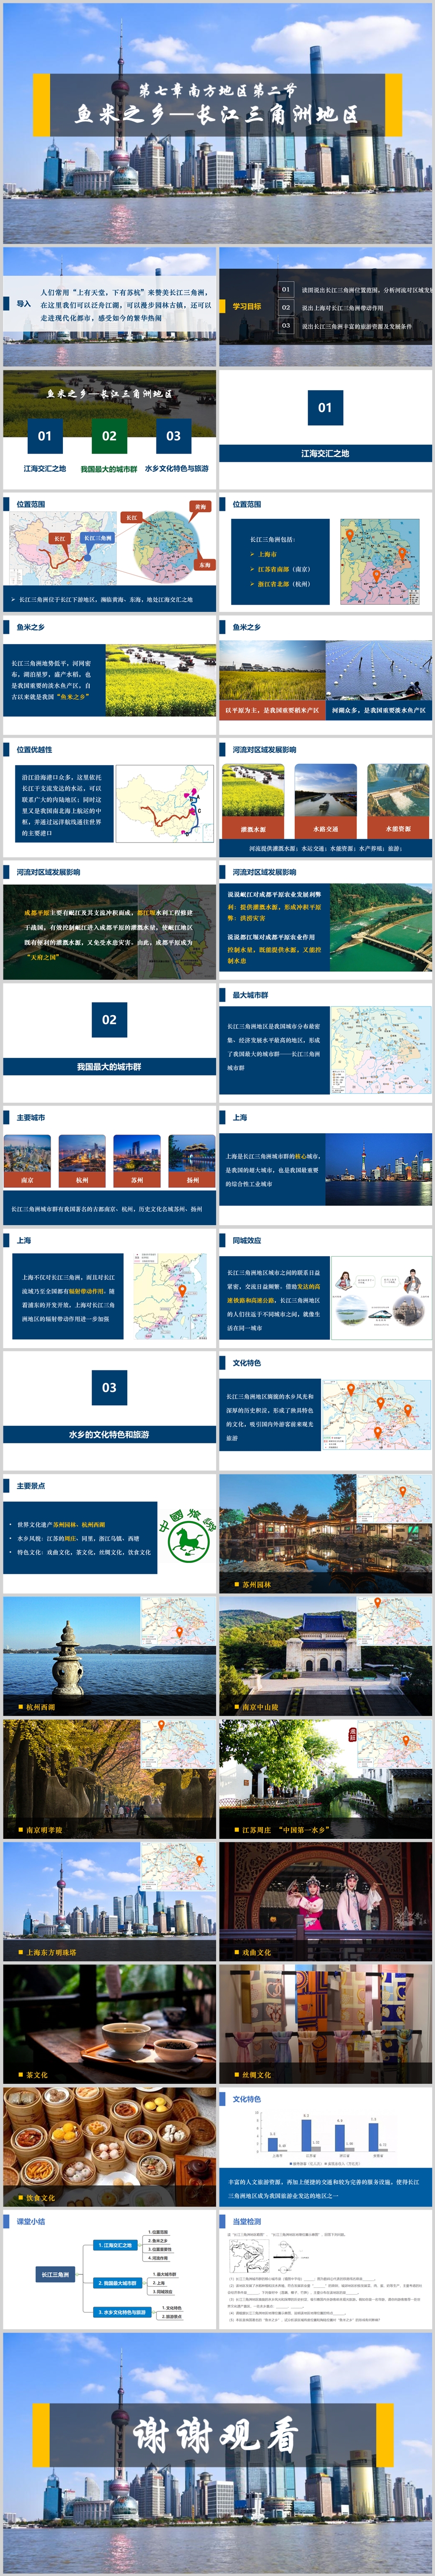 第七章第二节 鱼米之乡—长江三角洲地区拼图.jpg